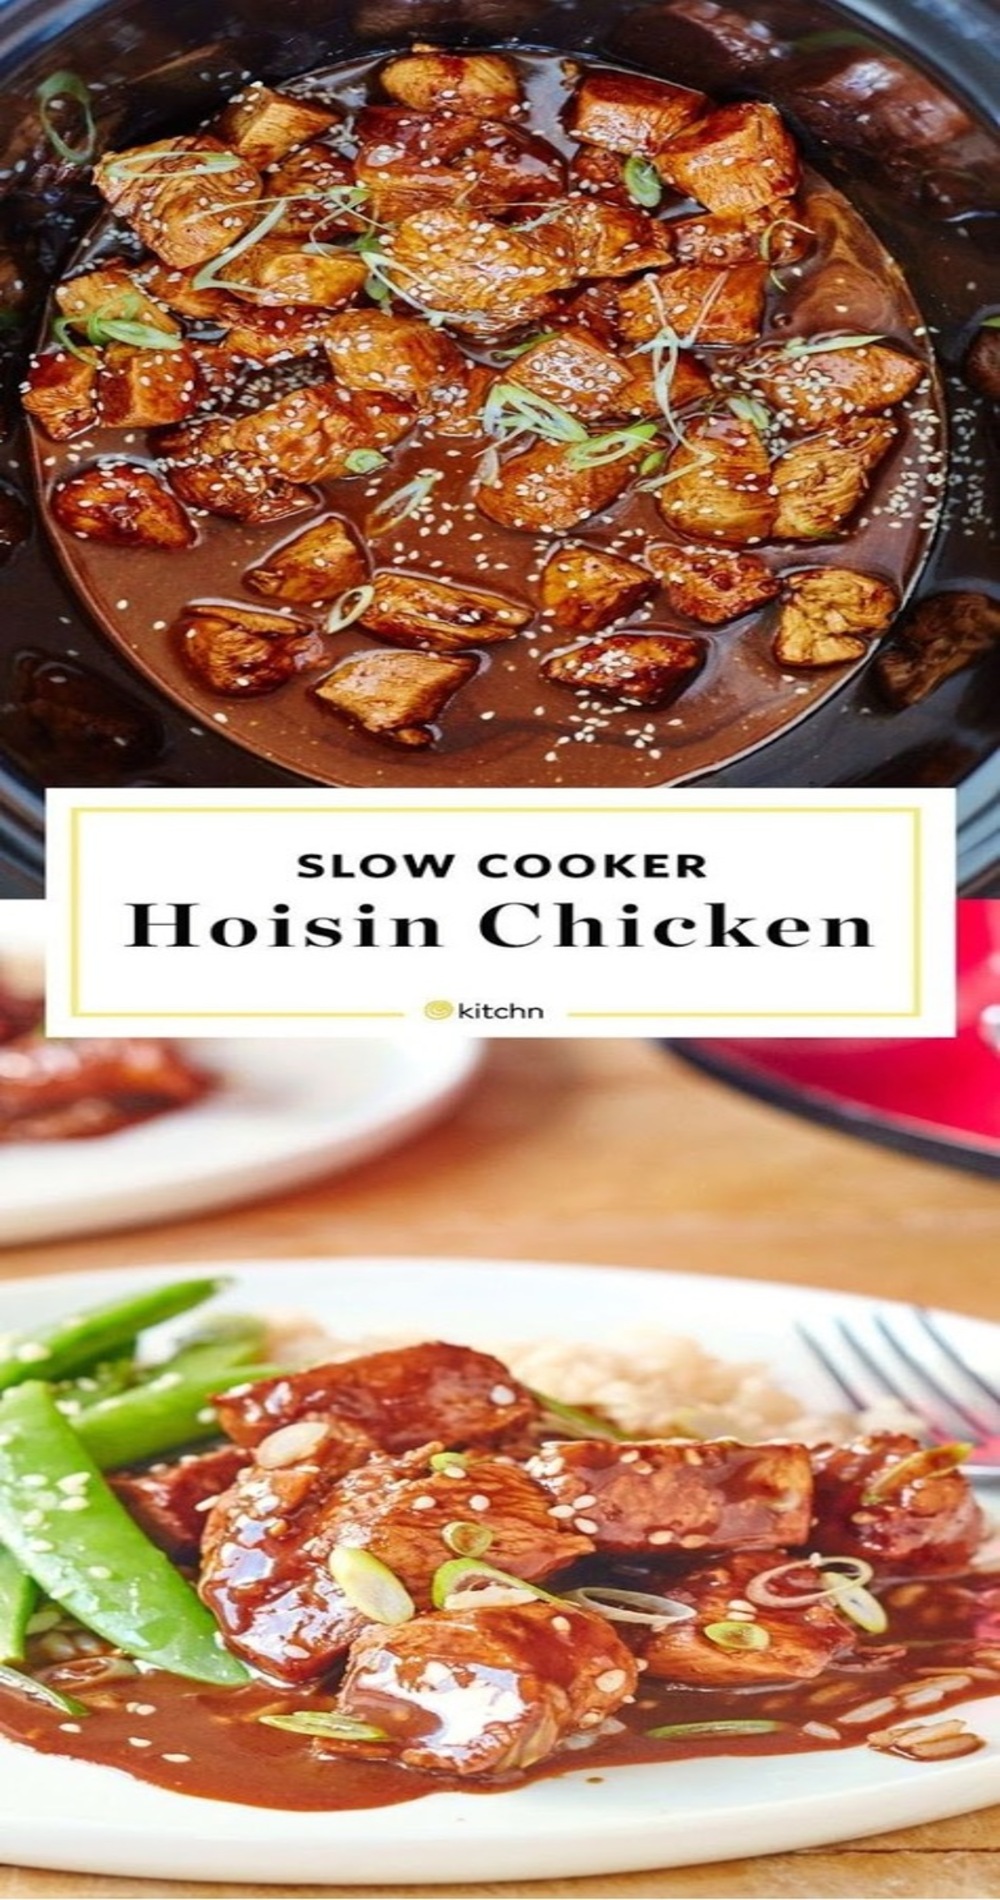 Slow-Cooker Hoisin Chicken